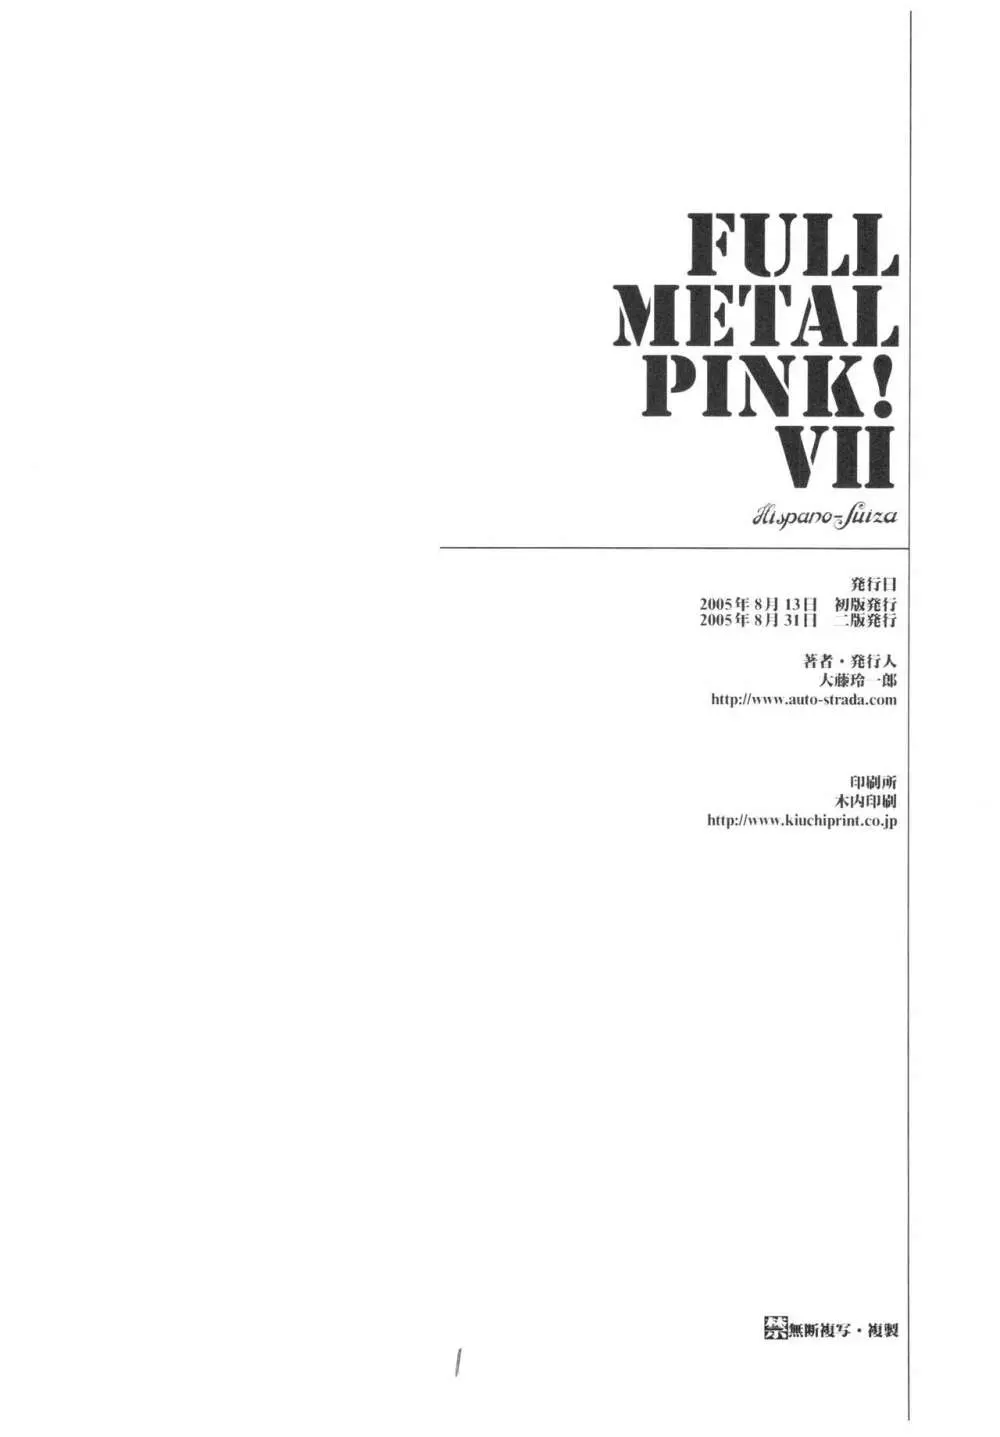 Full Metal Pink! VII - page29